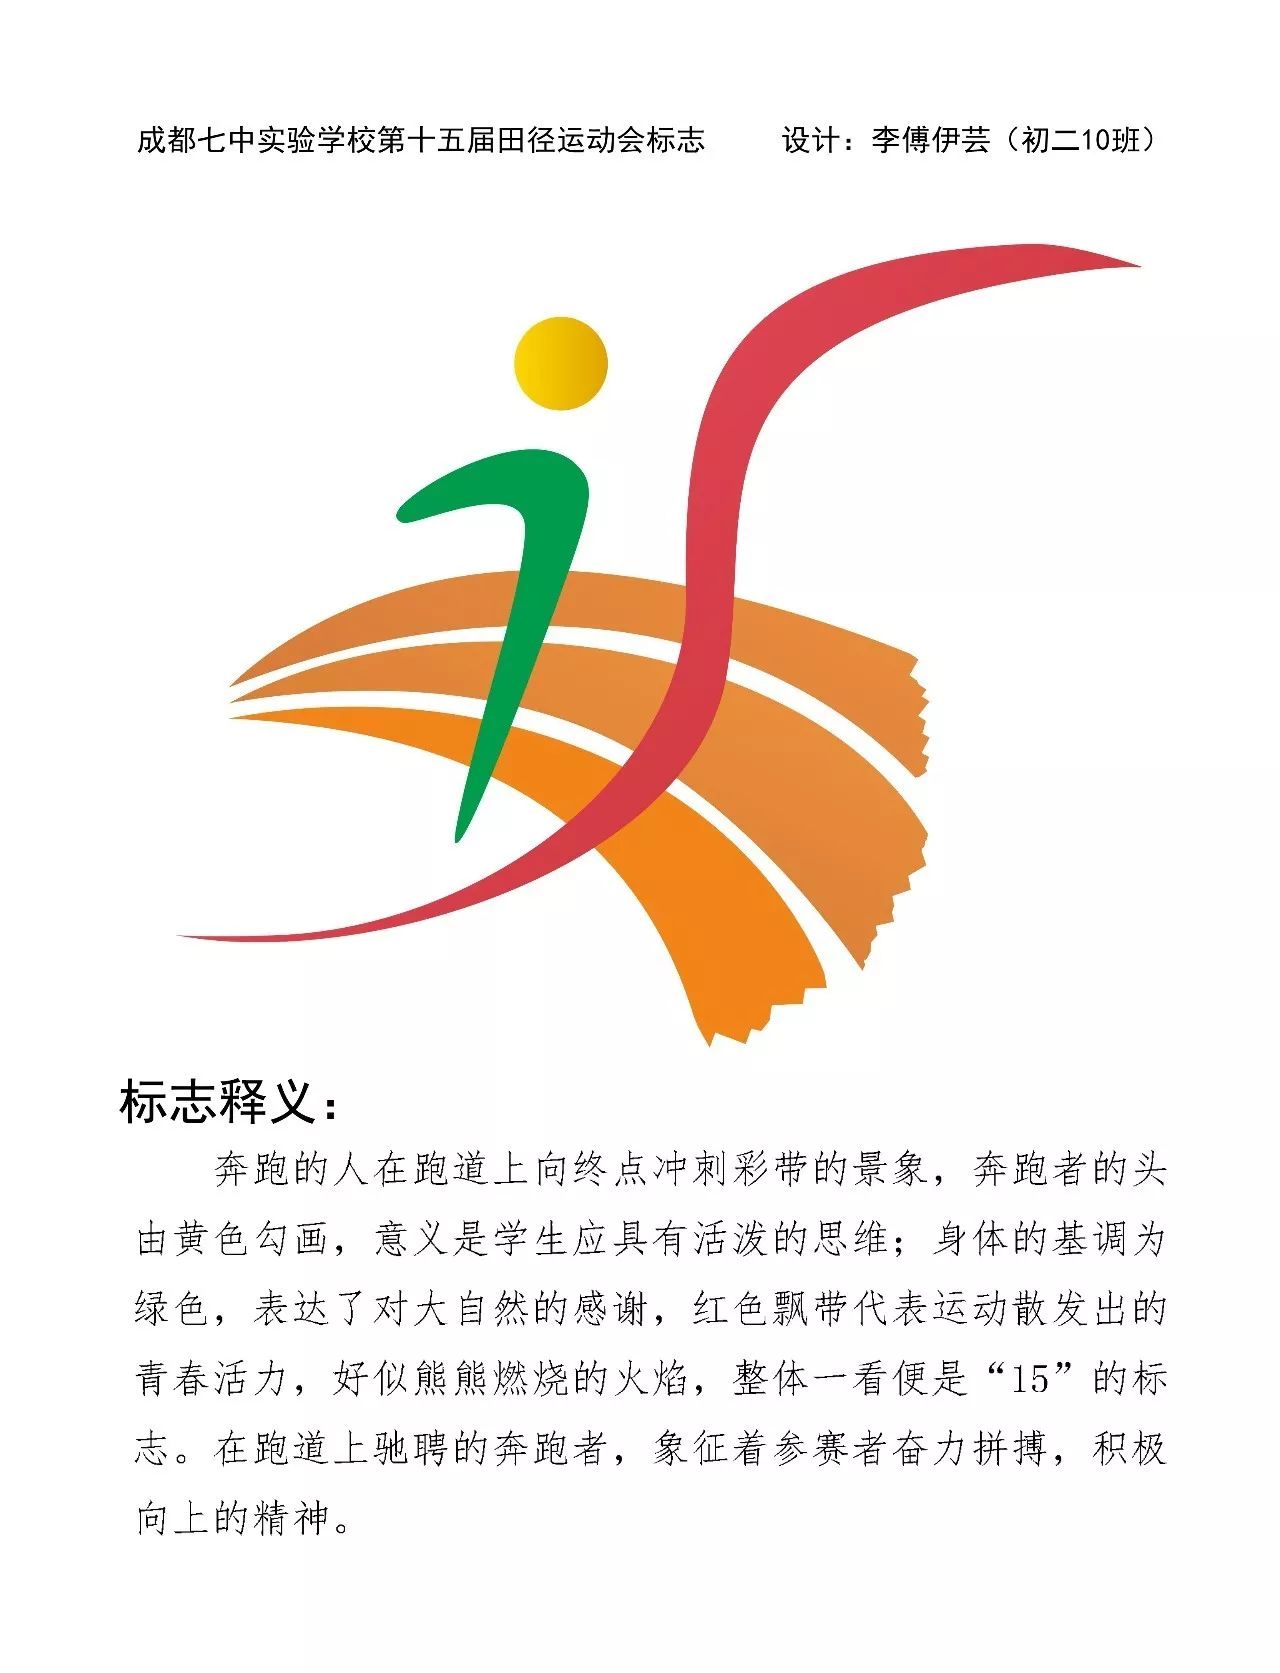 第十五届运动会会徽图片